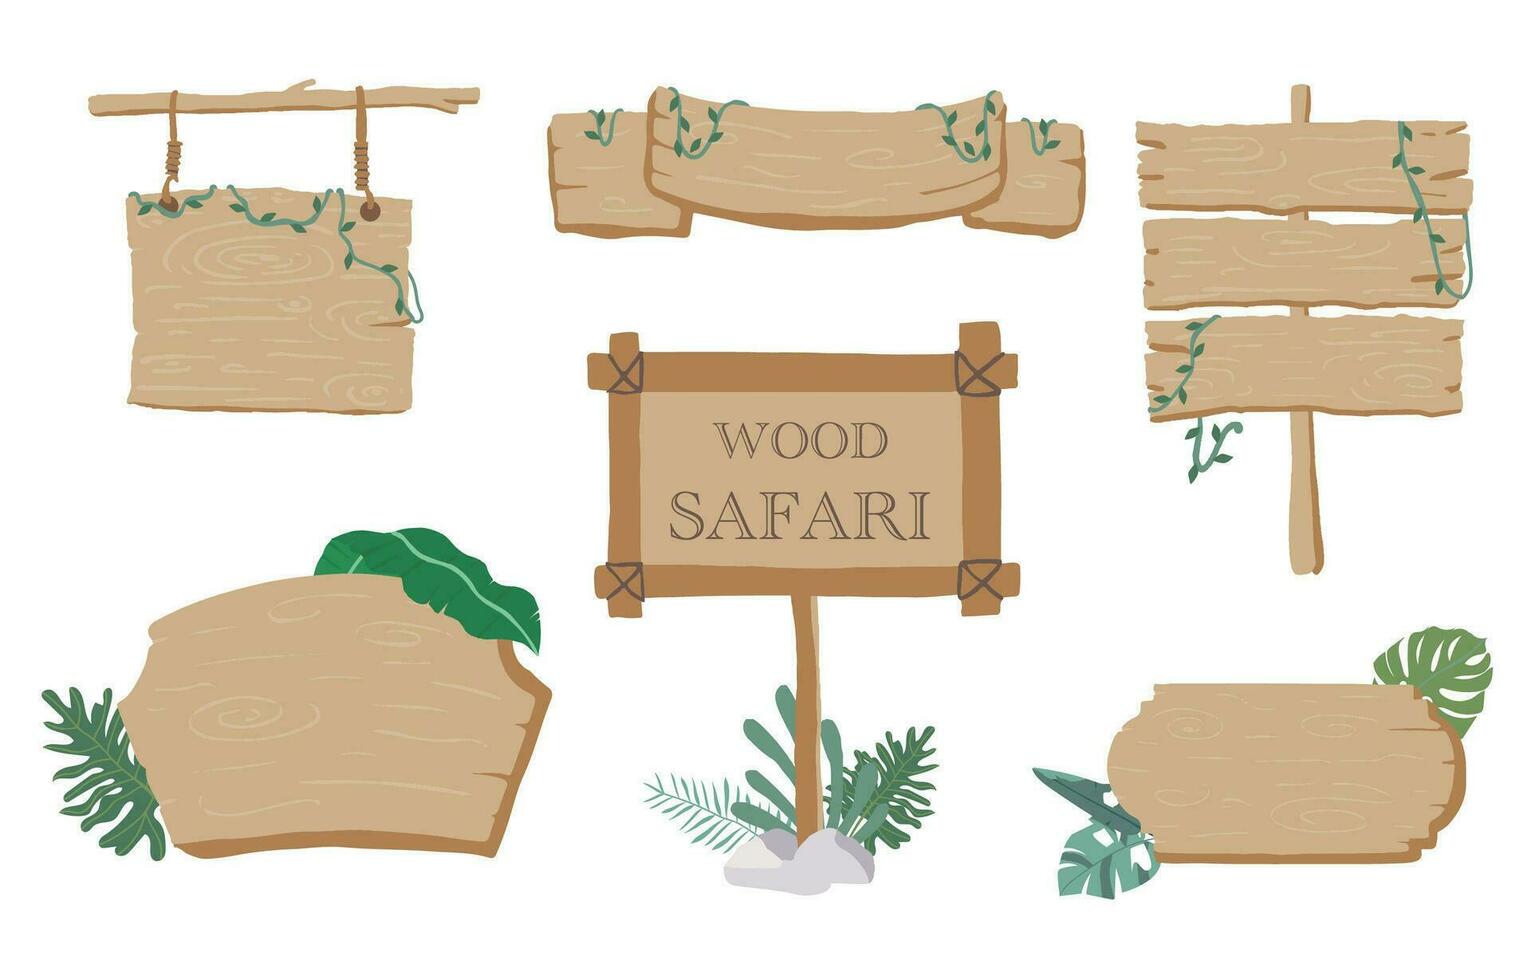 hout banier verzameling van safari achtergrond set.bewerkbaar vector illustratie voor verjaardag uitnodiging, ansichtkaart en sticker